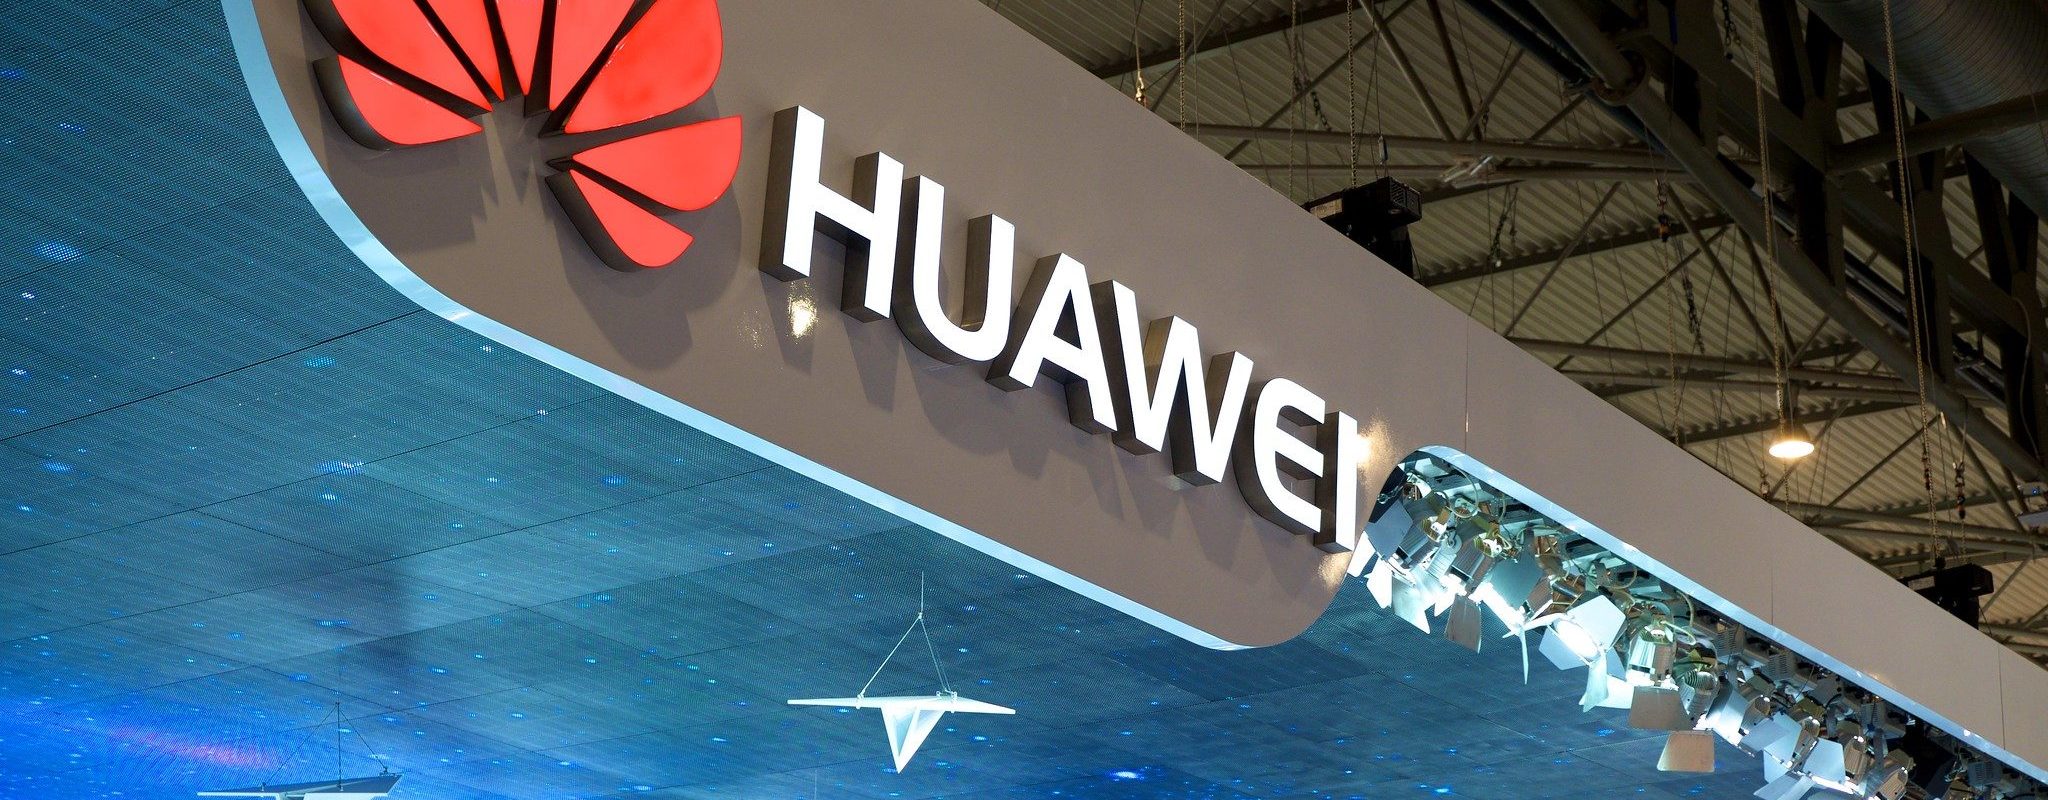 Huawei en Alsace, opération séduction pour accéder au marché européen de la 5G